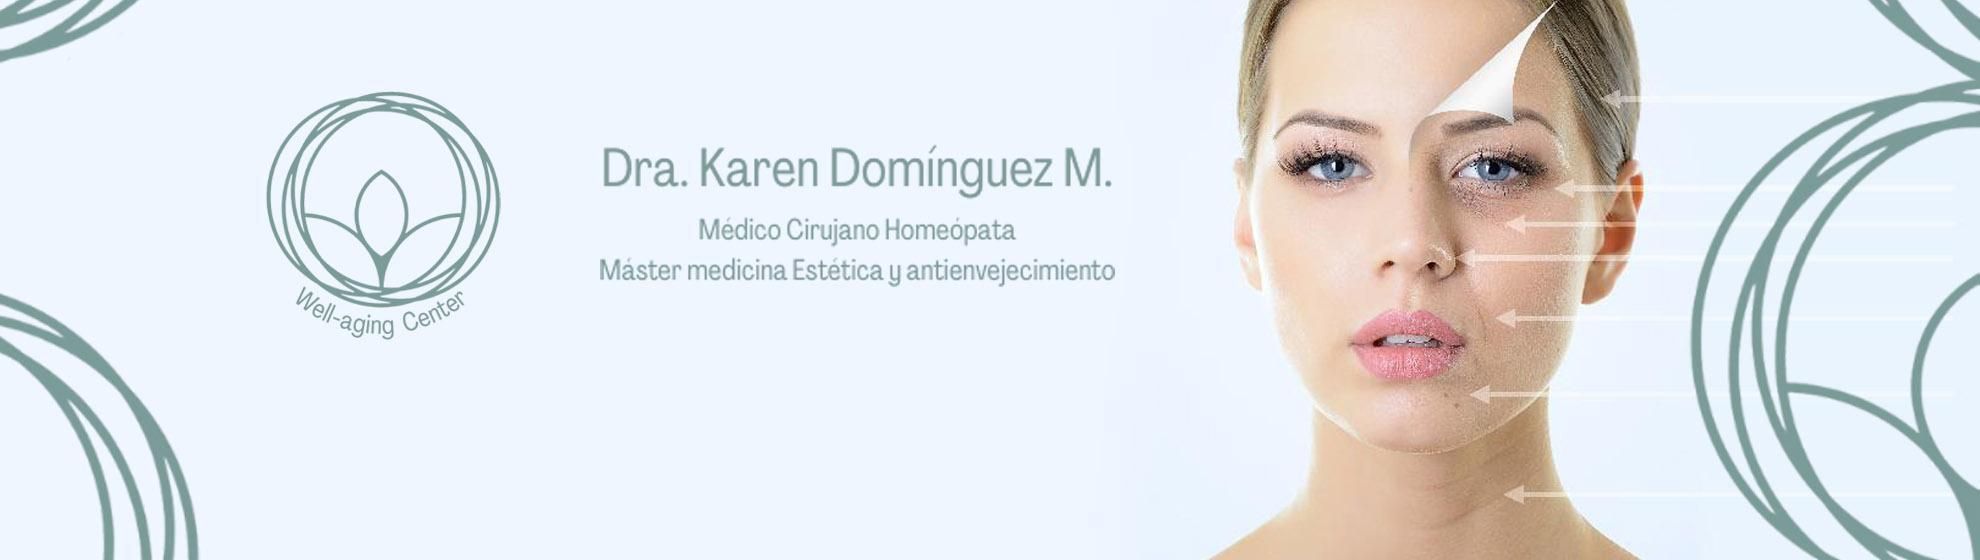 Dra. Karen Domínguez M